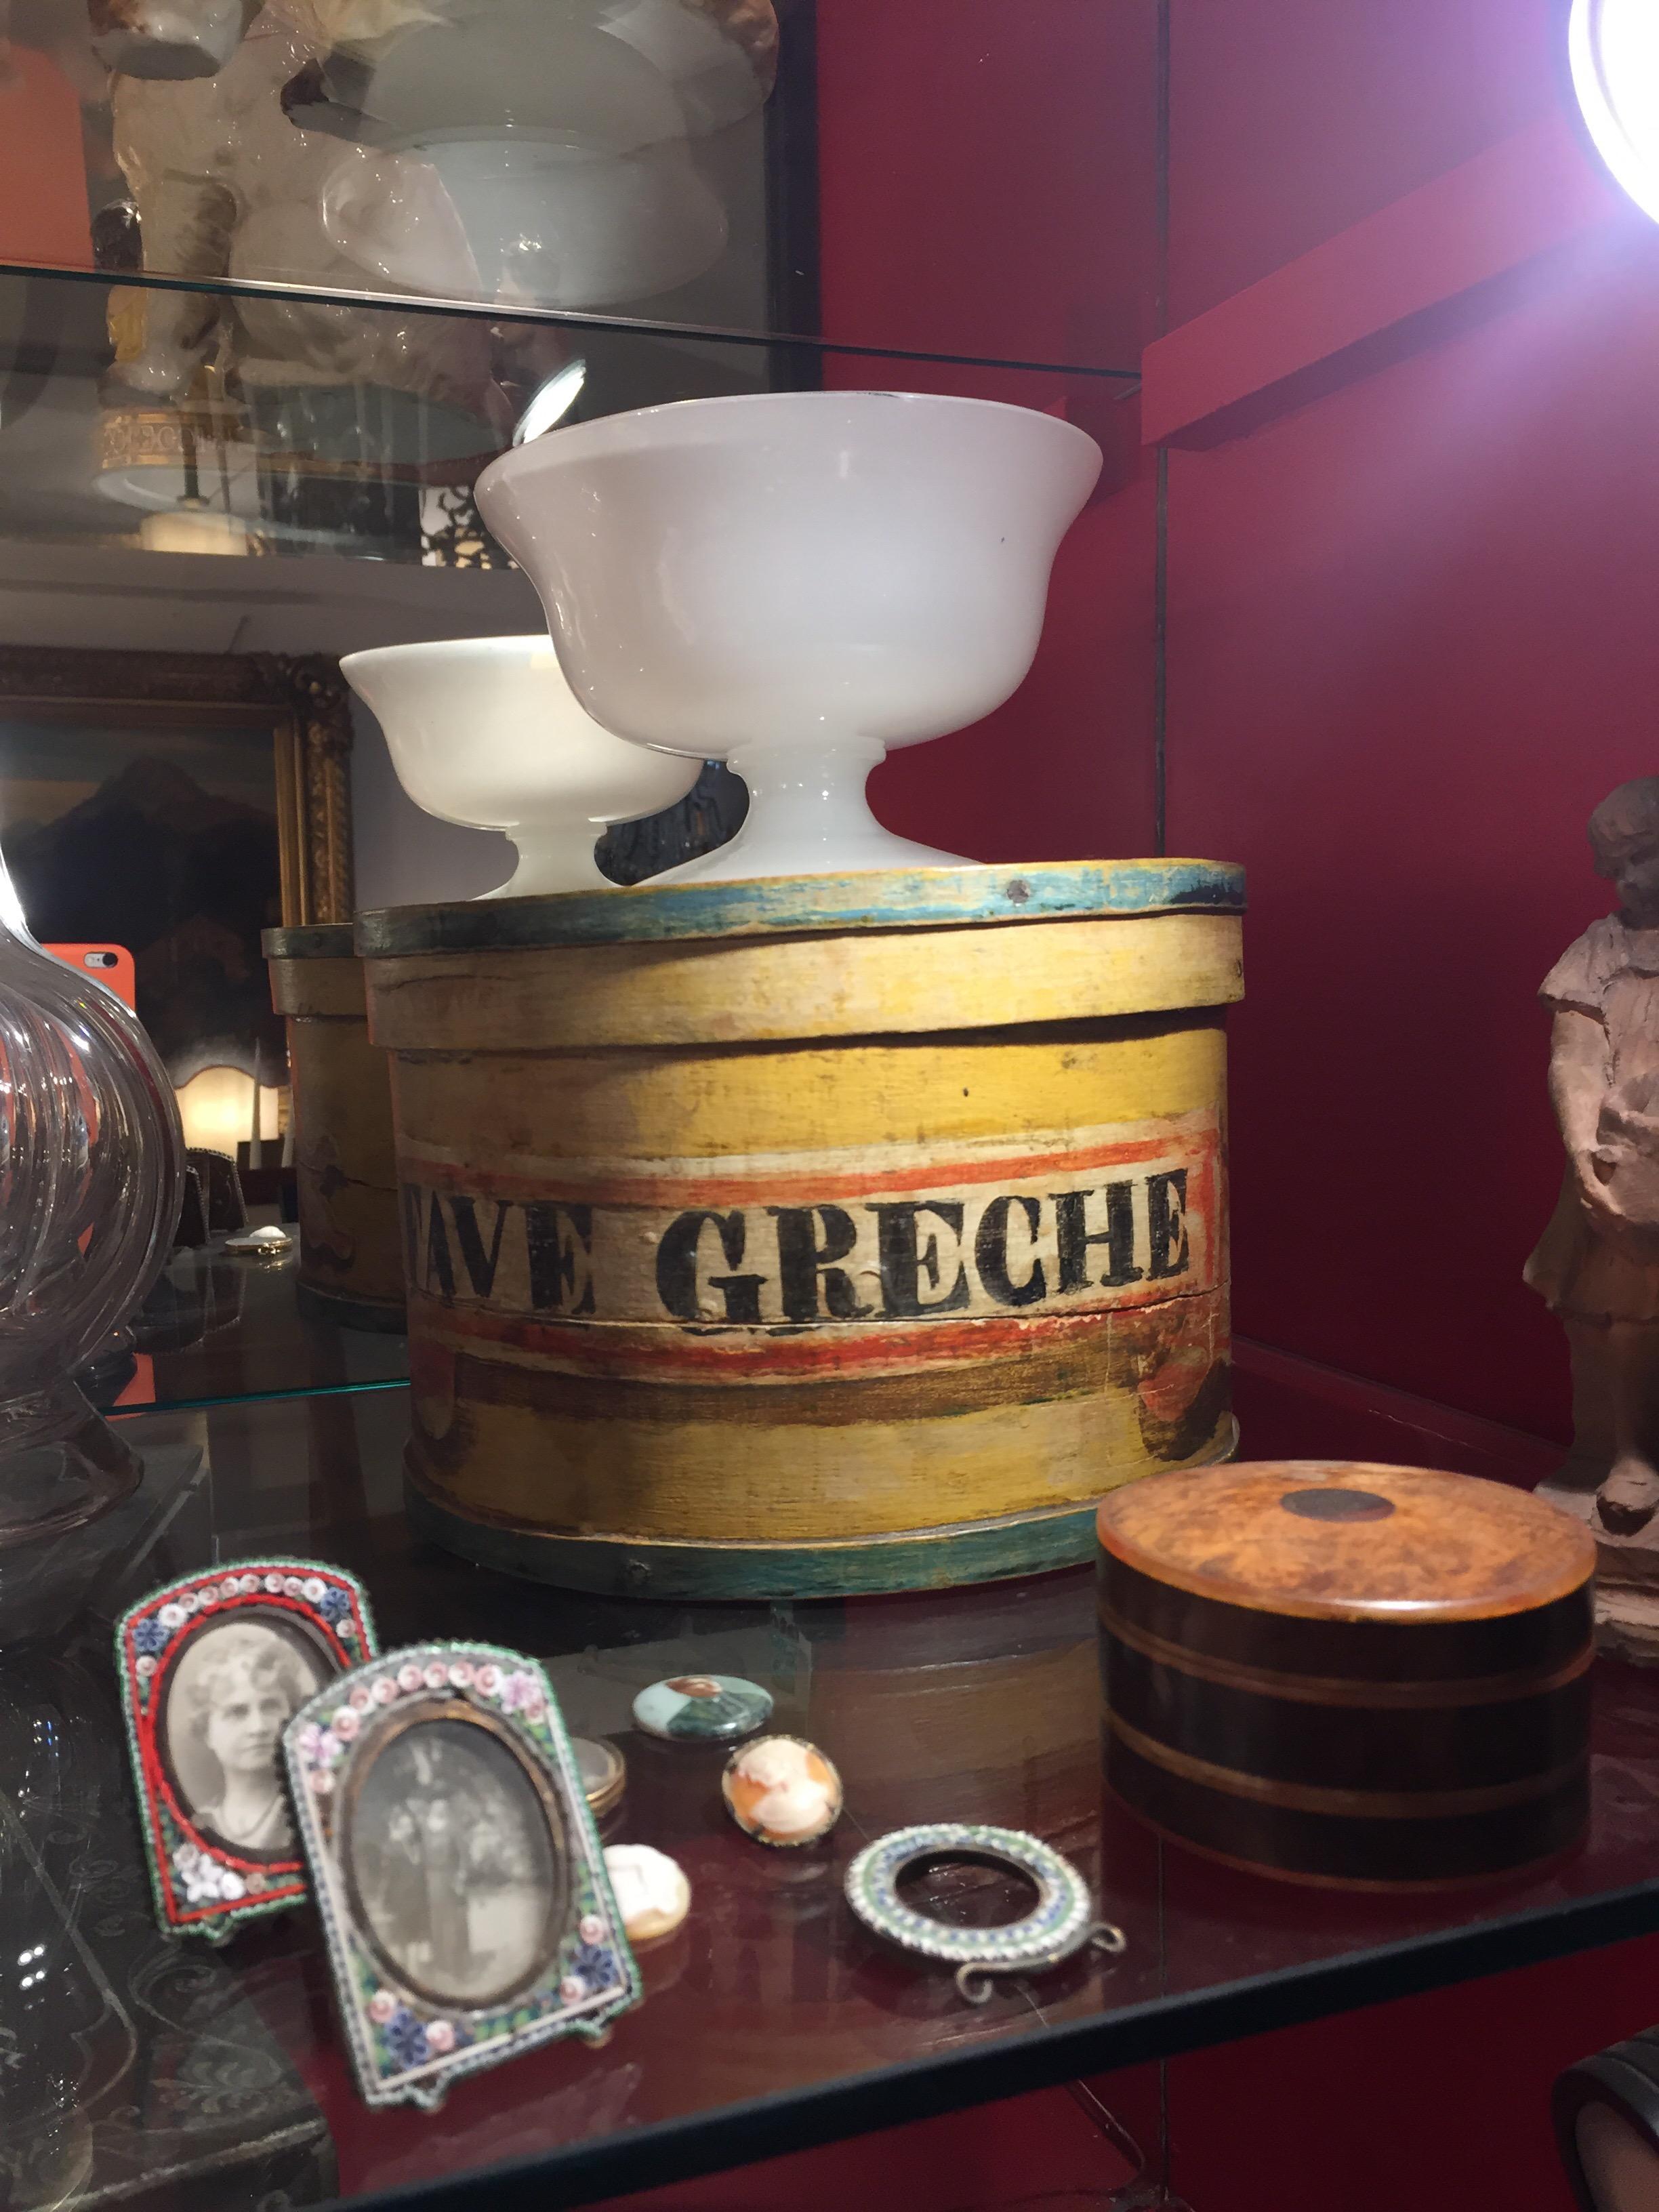 Eine italienische Kiste aus Buchenholz mit Deckel aus dem 19. Jahrhundert, ein antiker Behälter zur Aufbewahrung von getrockneten Hülsenfrüchten, wie die italienische Aufschrift FAVE GRECHE zeigt, die für griechische Bohnen steht, ein im gesamten